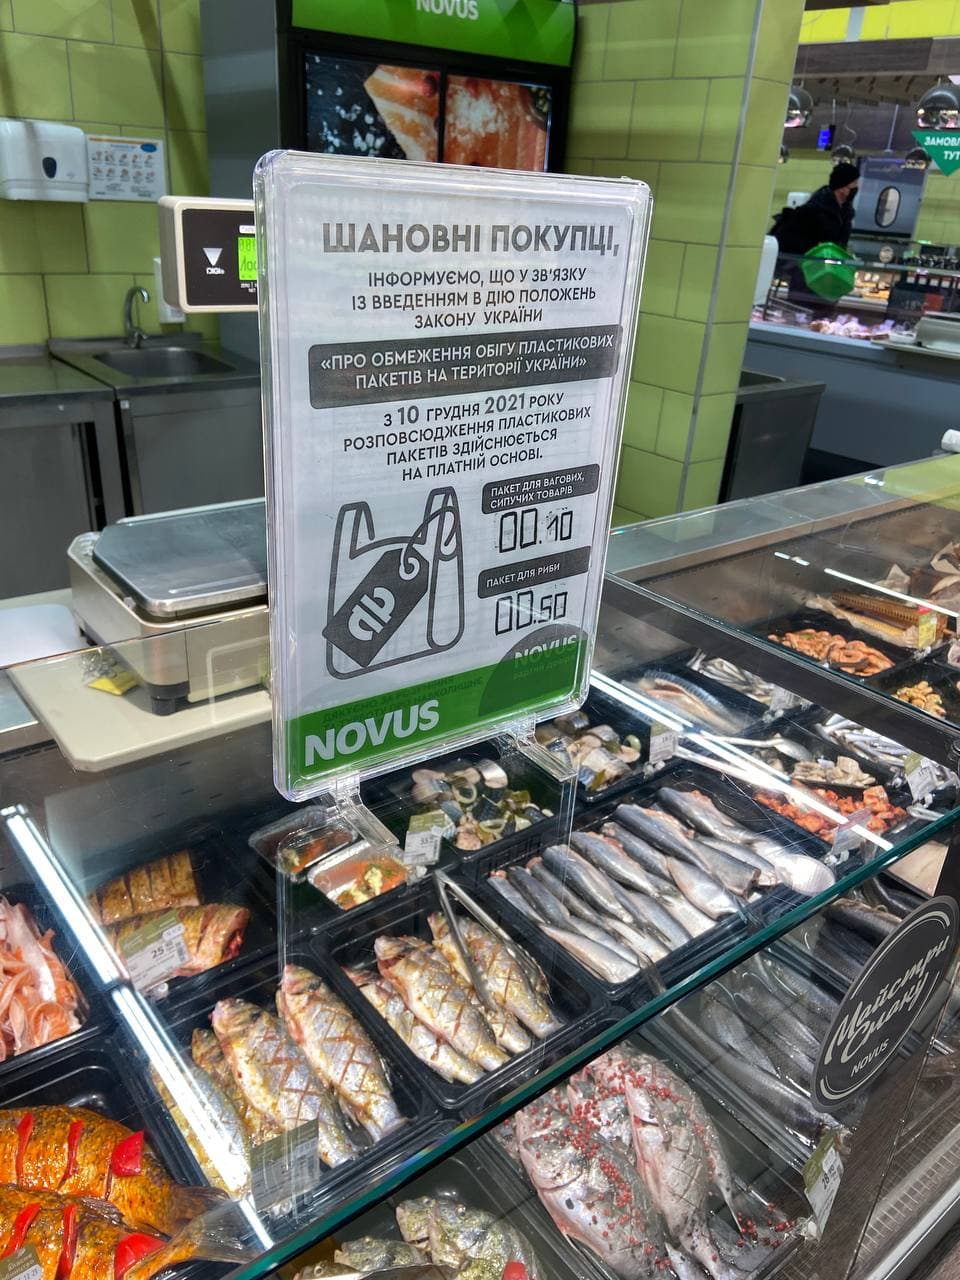 Новус вимагає 50 копійок за пакет для риби. Фото: Ольга Володимирова